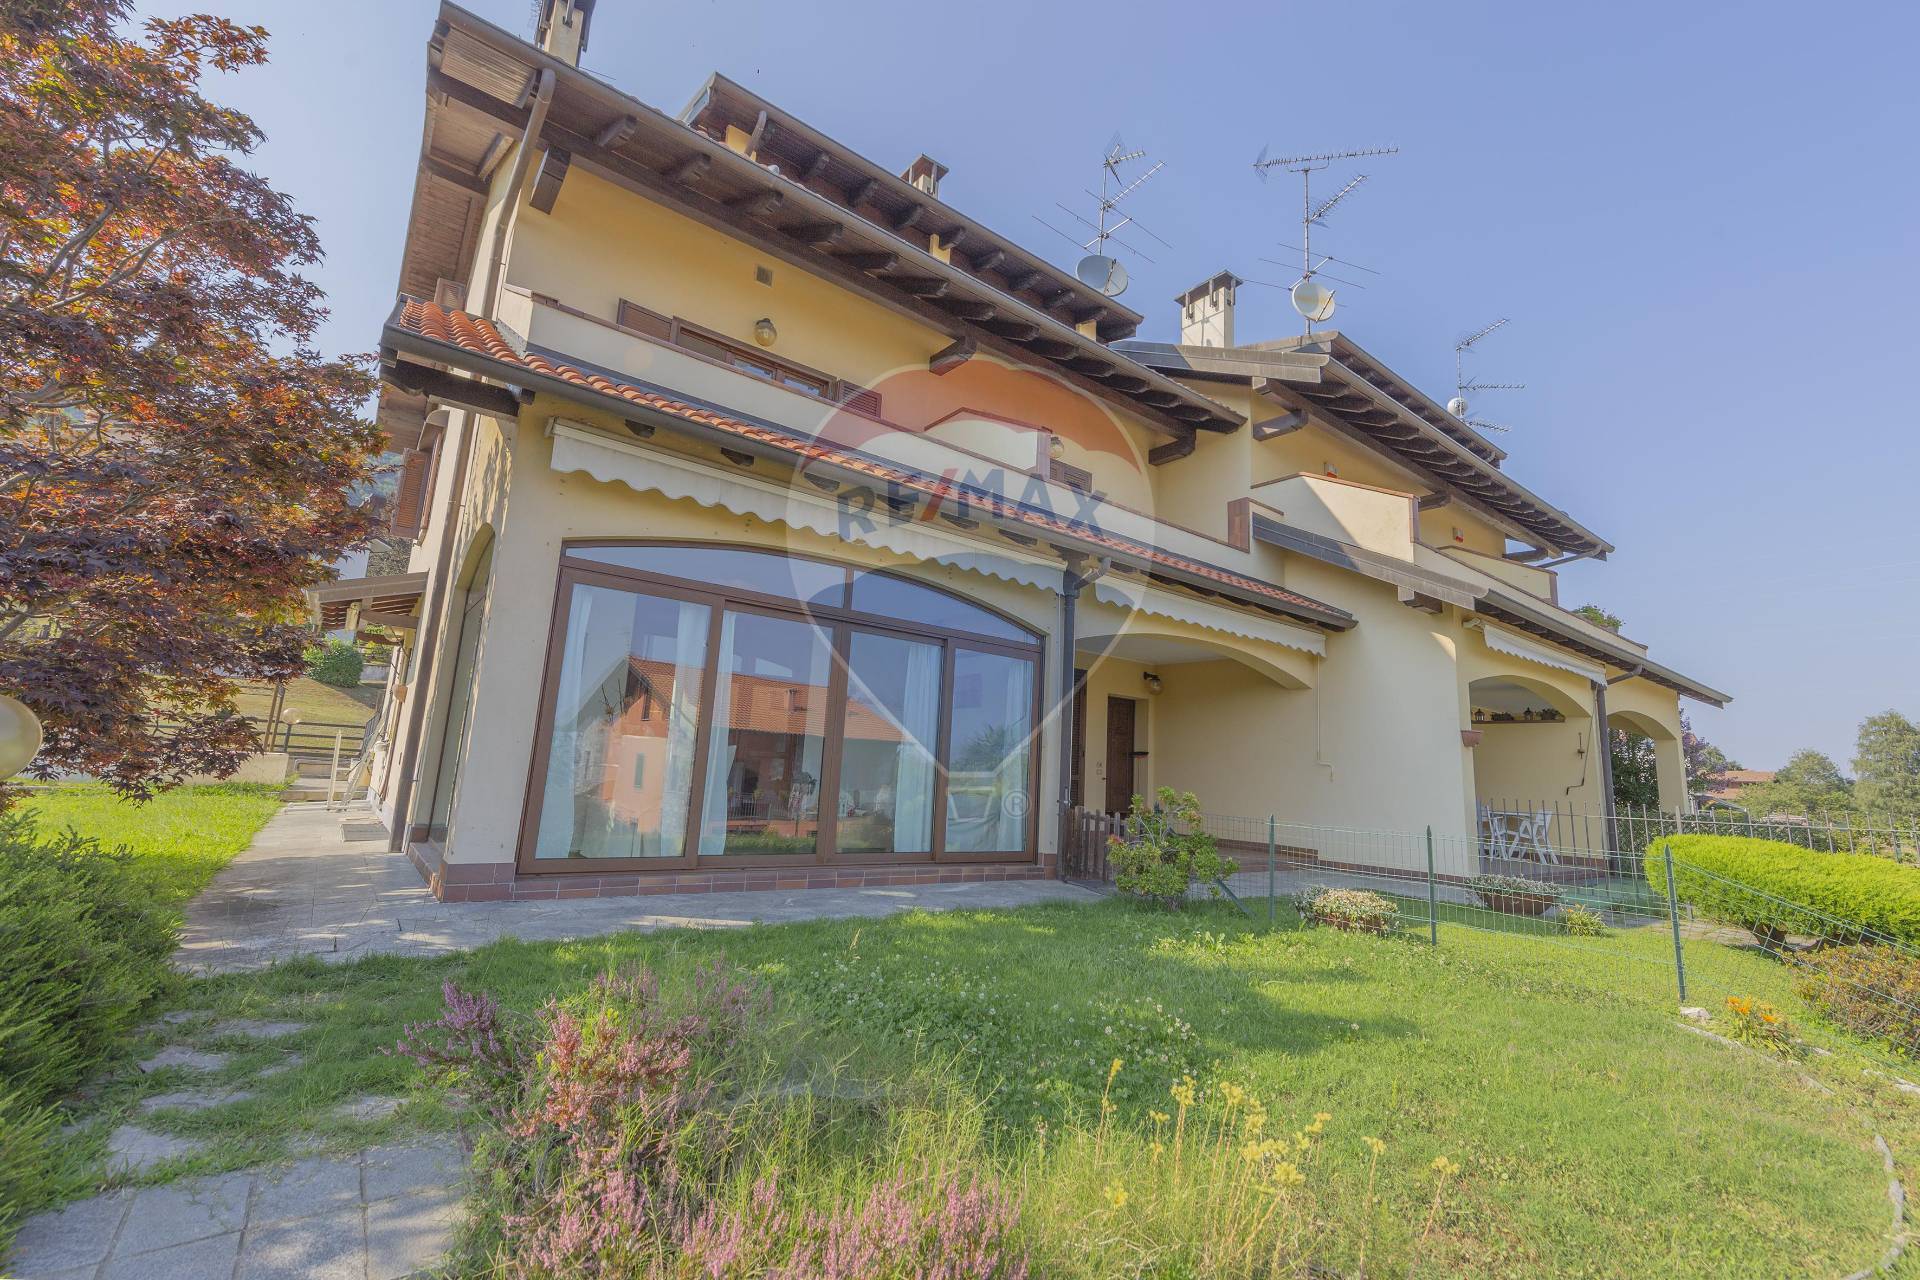 Villa a Schiera in vendita a Nebbiuno, 4 locali, prezzo € 280.000 | PortaleAgenzieImmobiliari.it